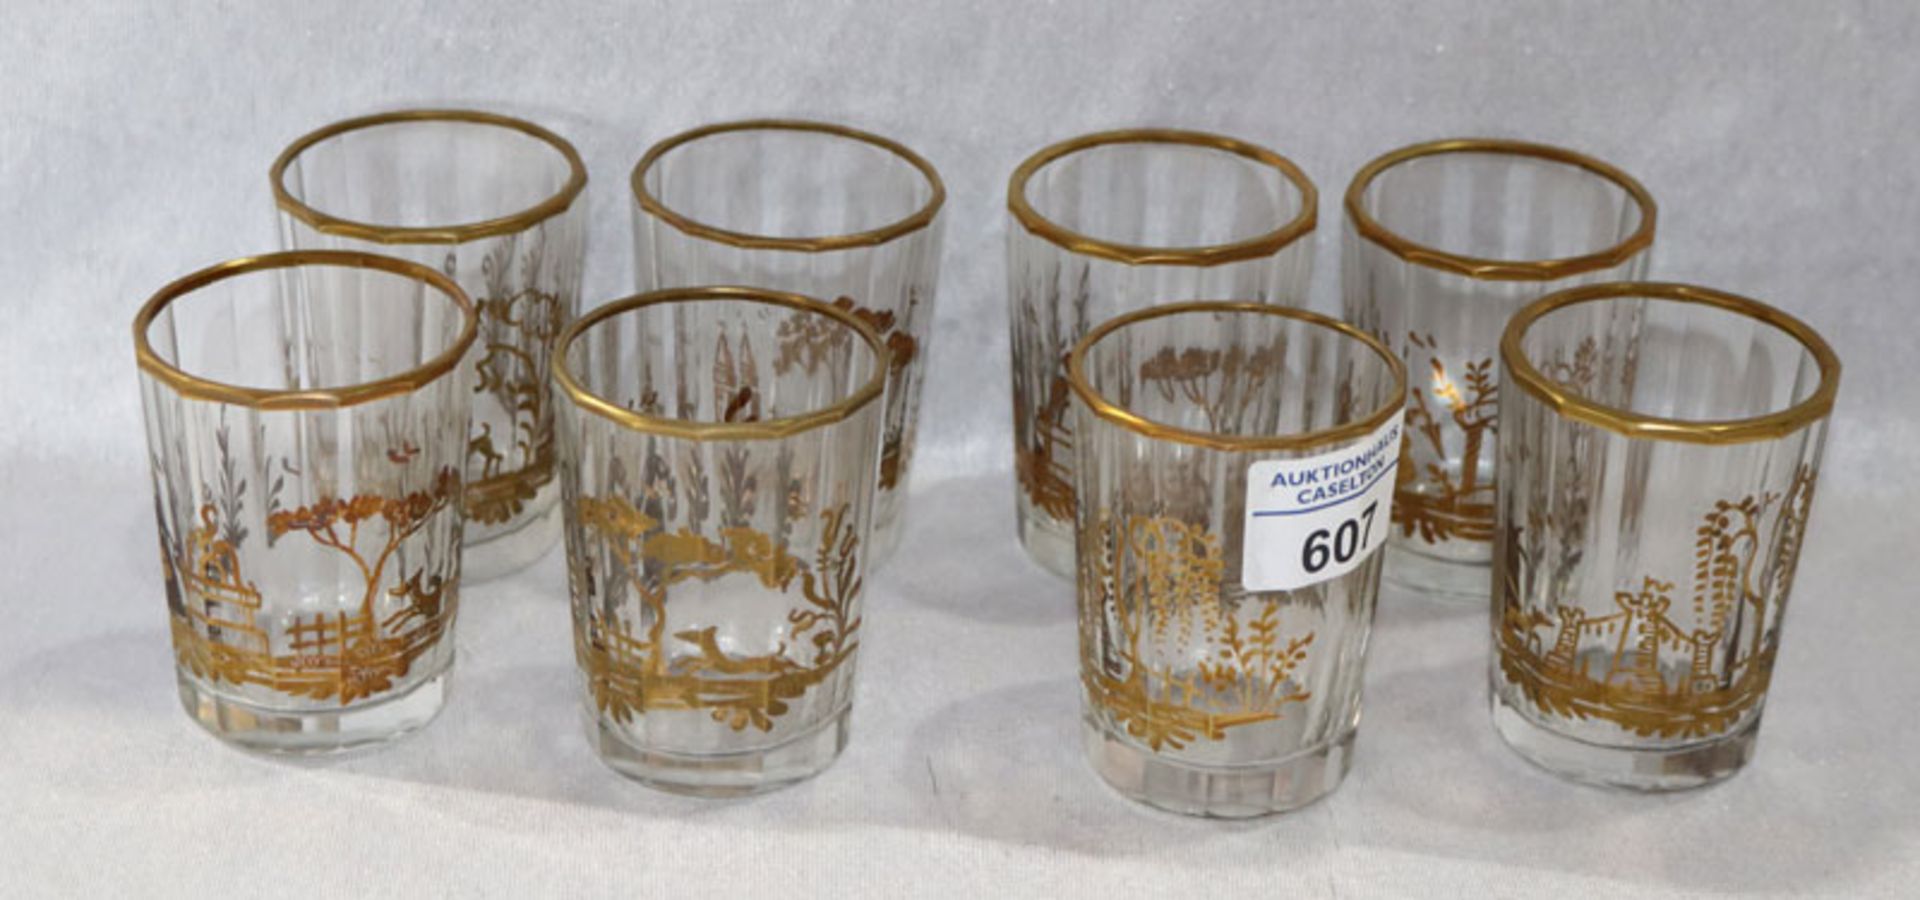 8 kleine Gläser mit verschiedenen Szenerien in Gold bemalt, Goldrand, H 7,5 cm, D 5,2 cm, teils